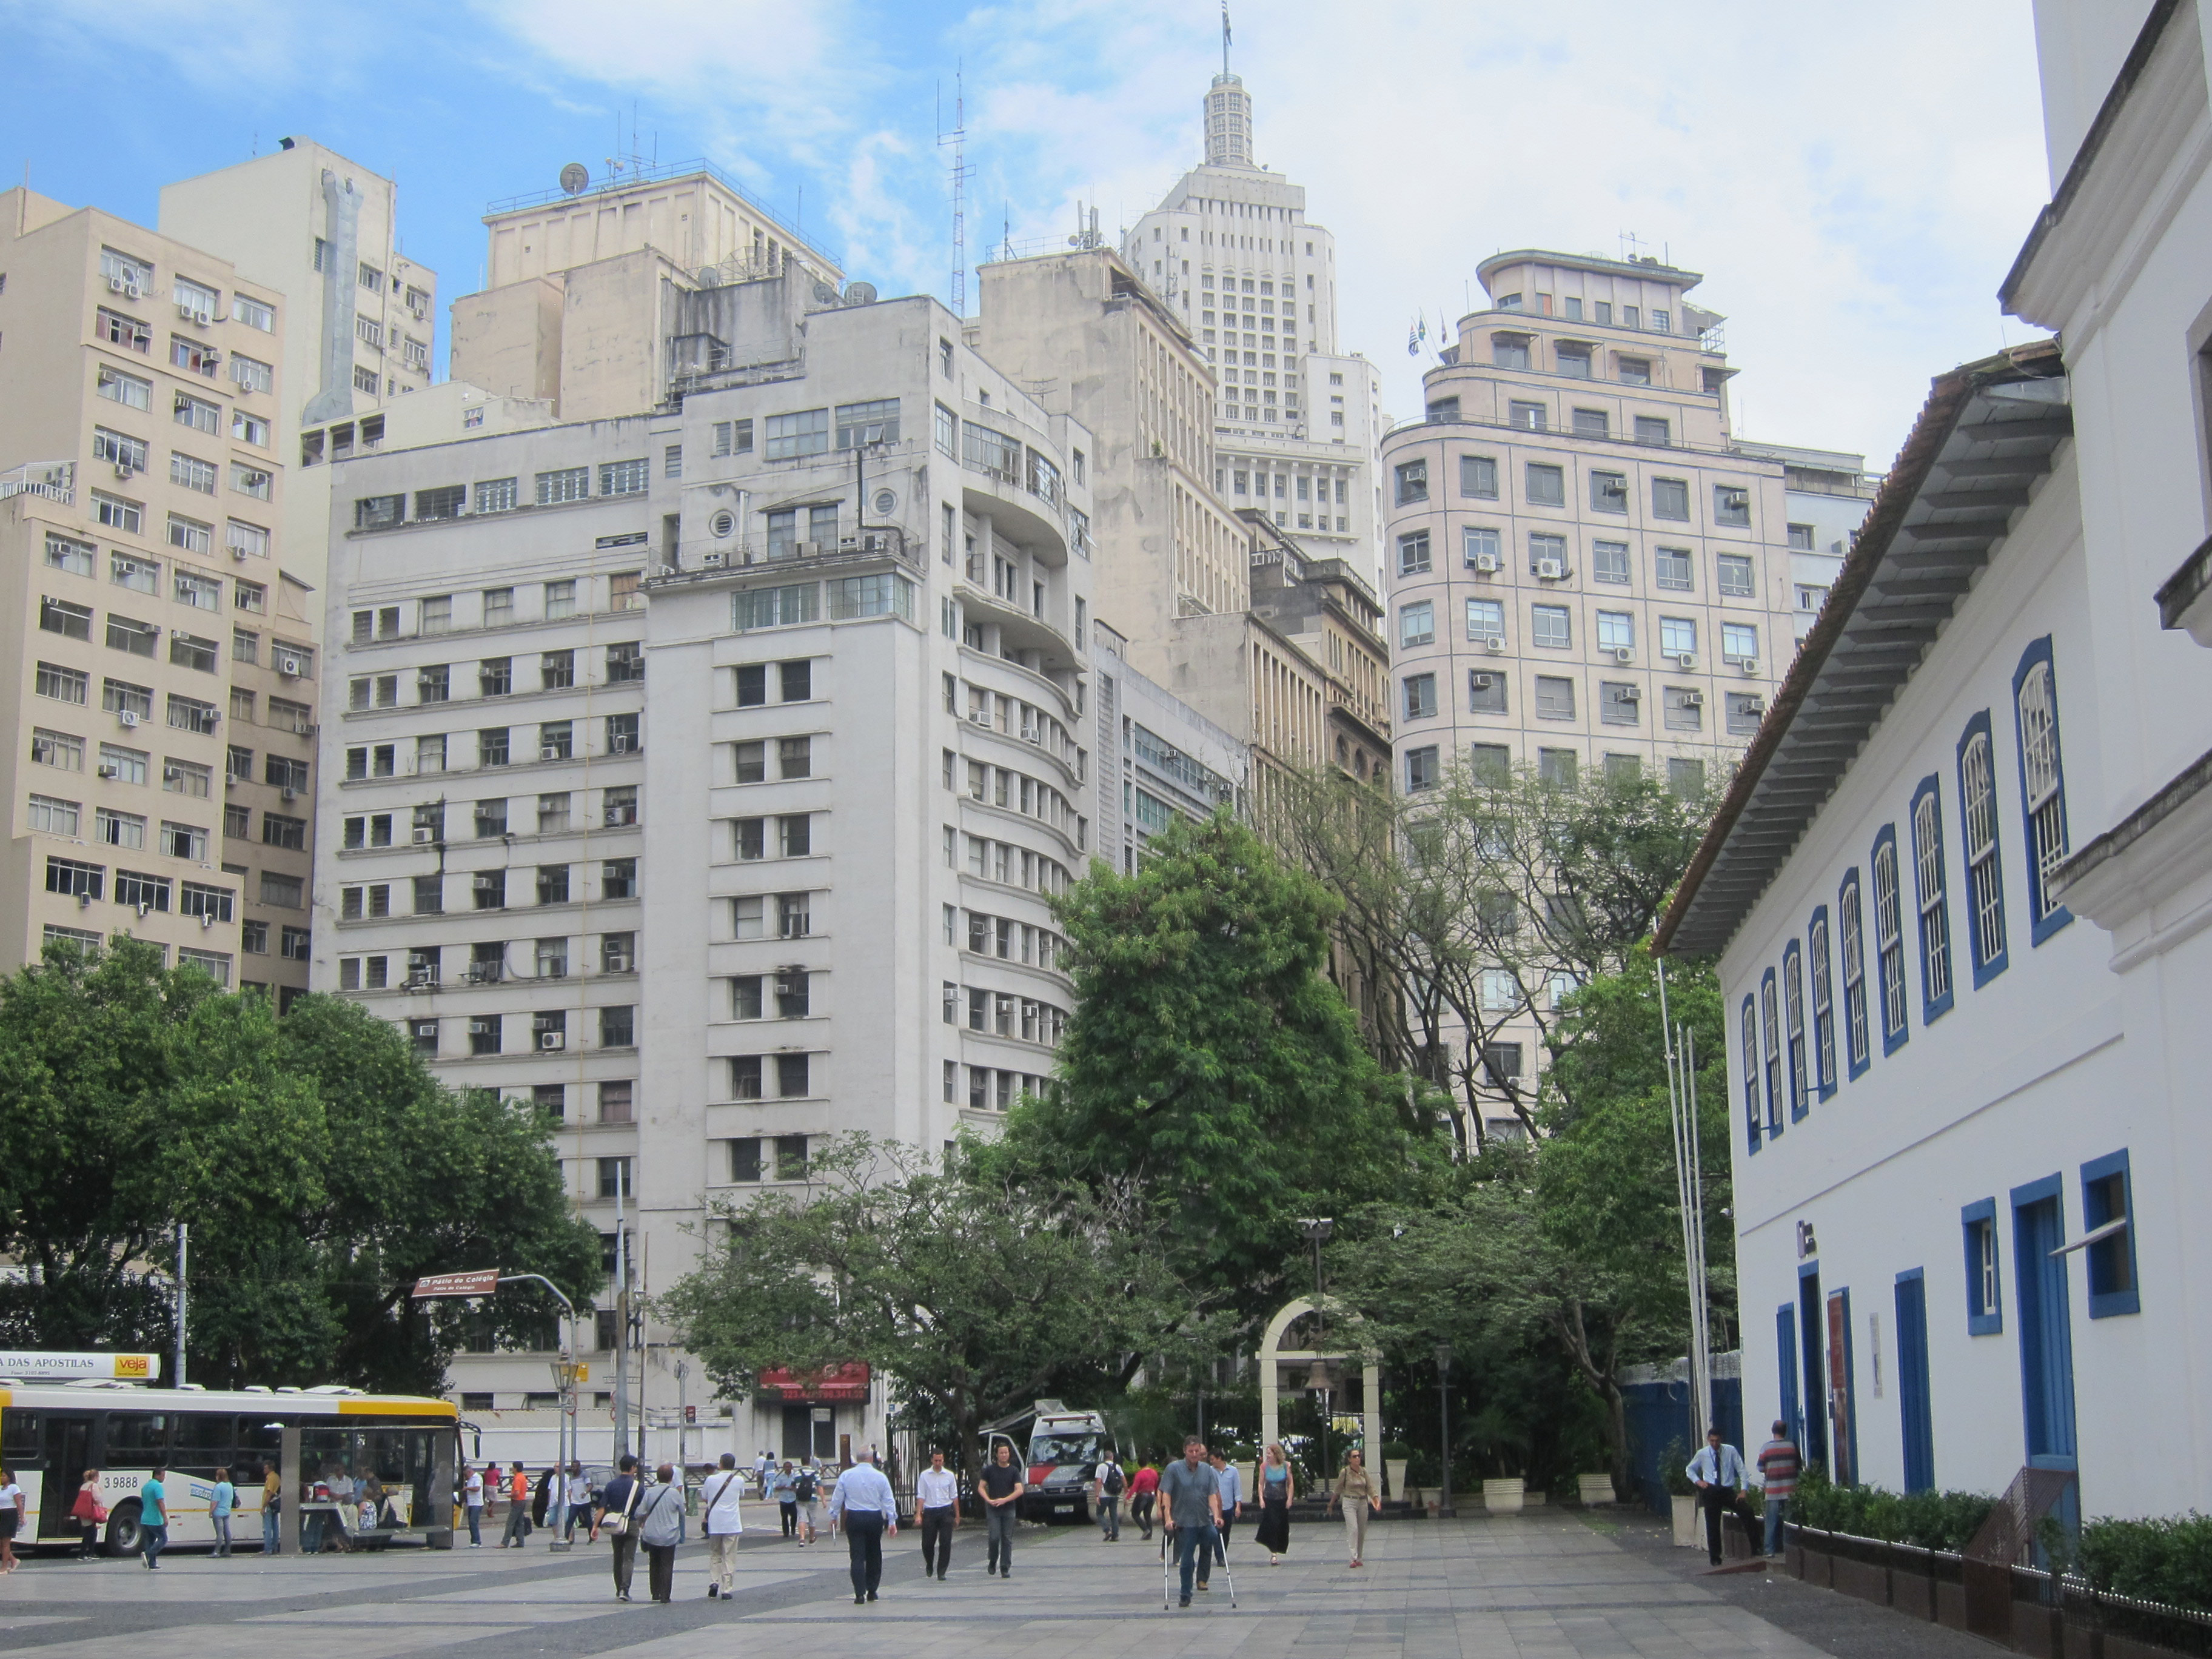 São Paulo với những ngôi nhà cao tầng như New York.